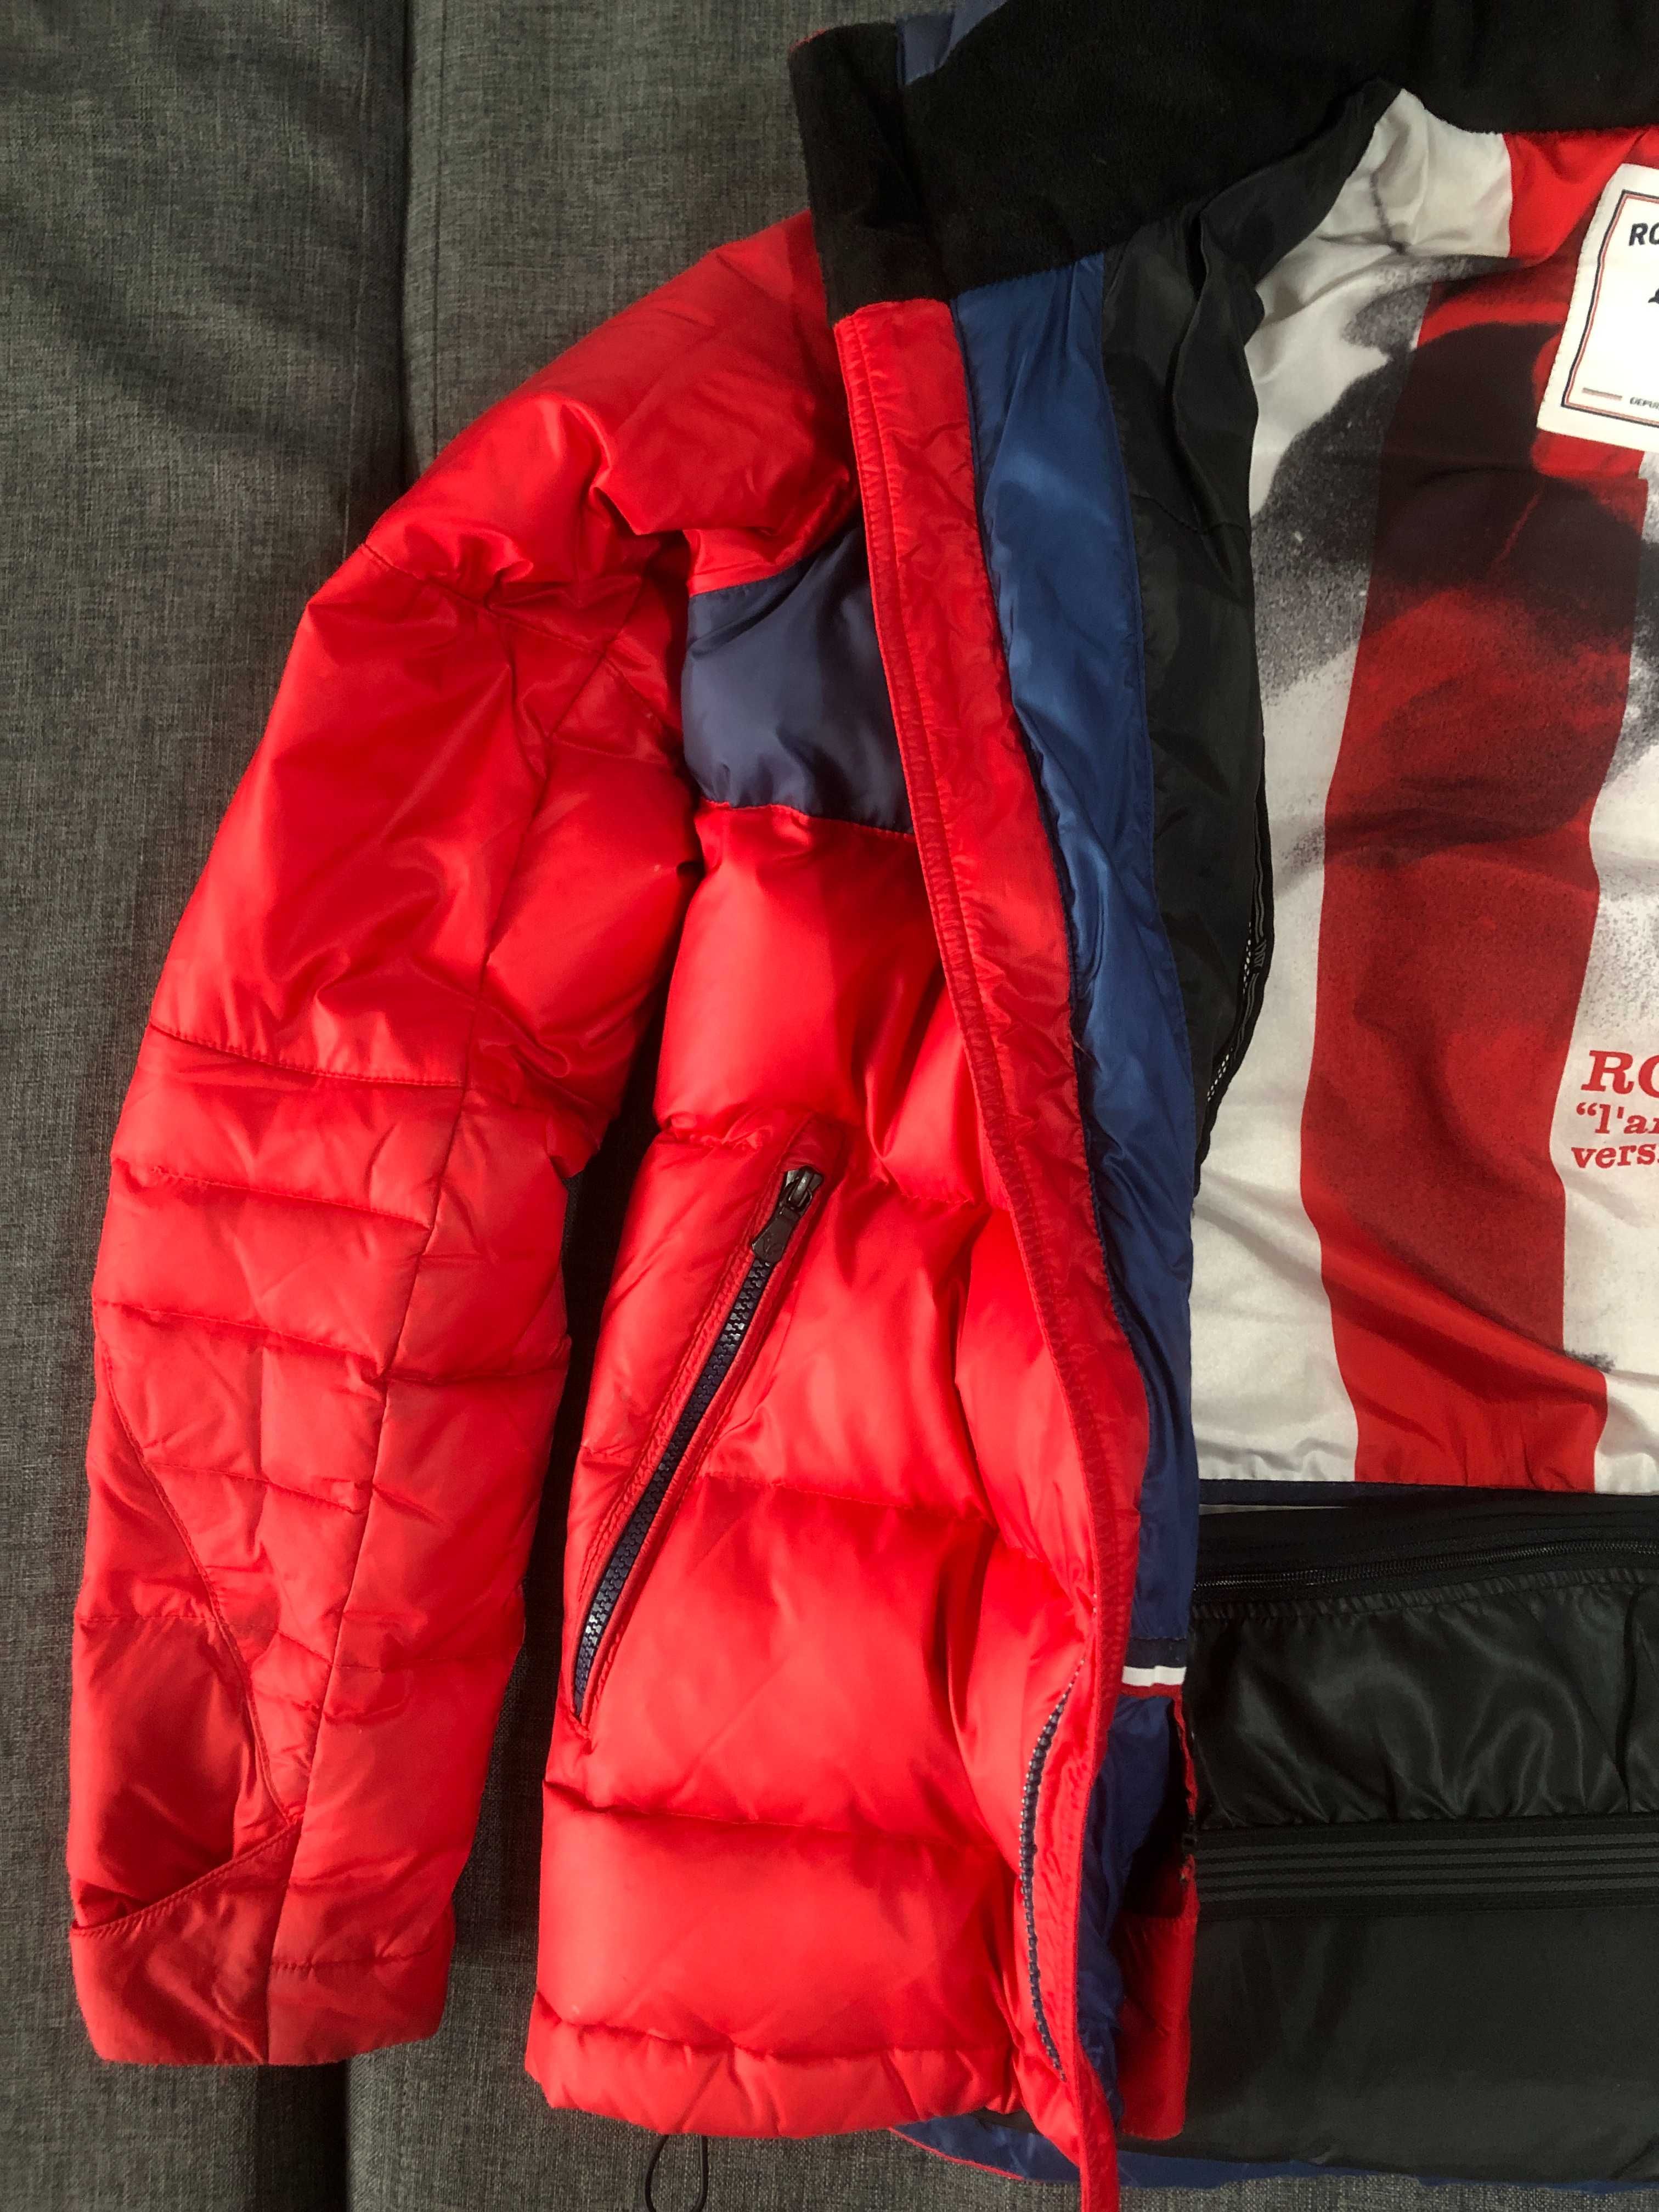 Ощутите невесомость горных вершин: лыжная куртка Rossignol премиум